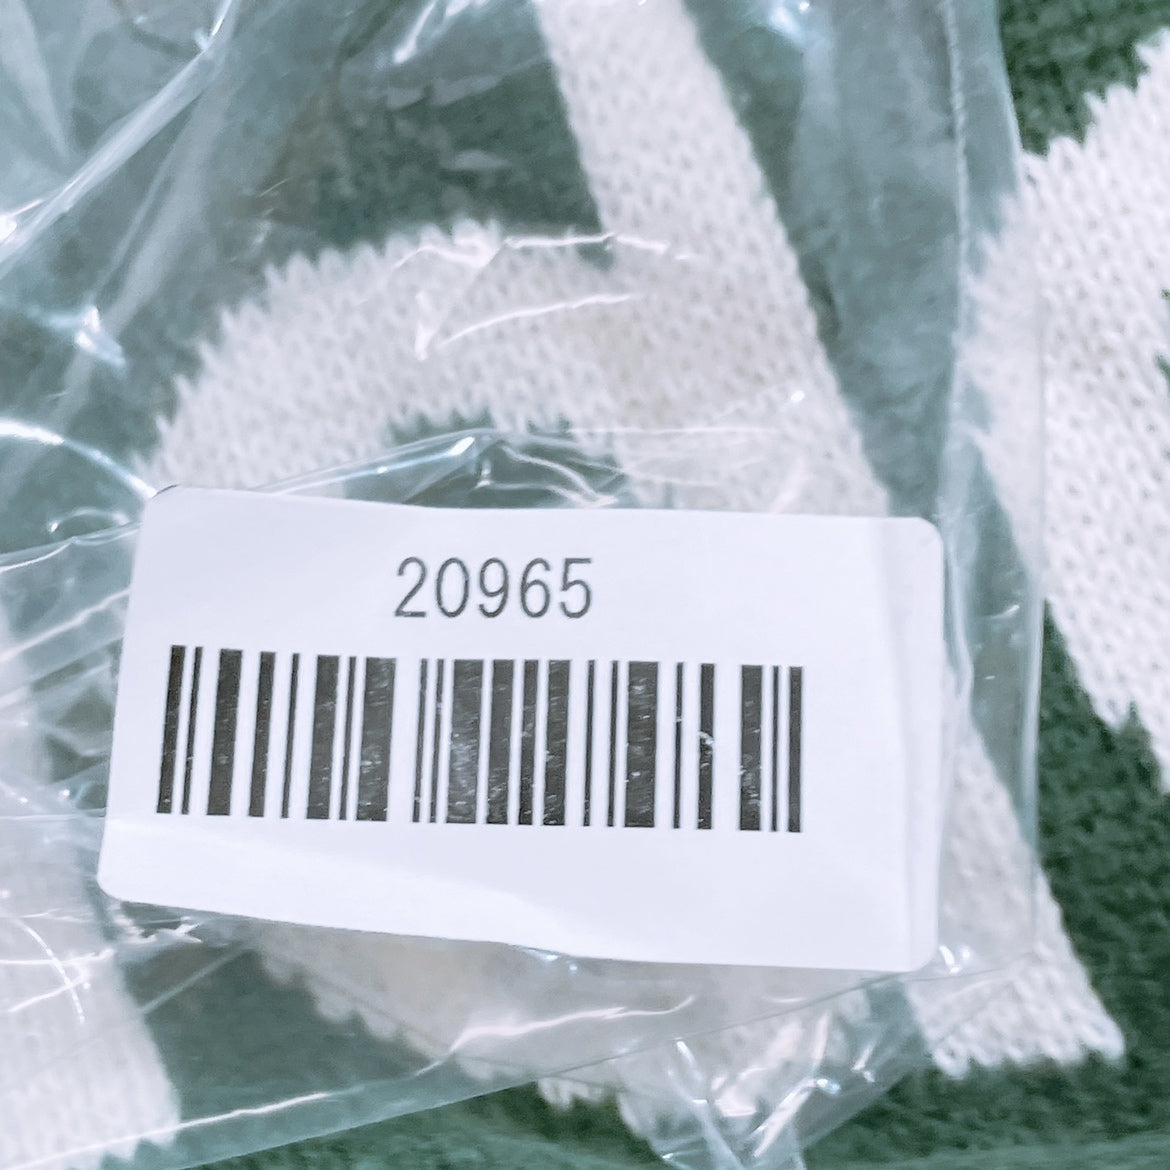 【20965】 adidas アディダス パーカー 長袖 トップス 緑 グリーン 白 ホワイト L フード付き シンプル 普段着